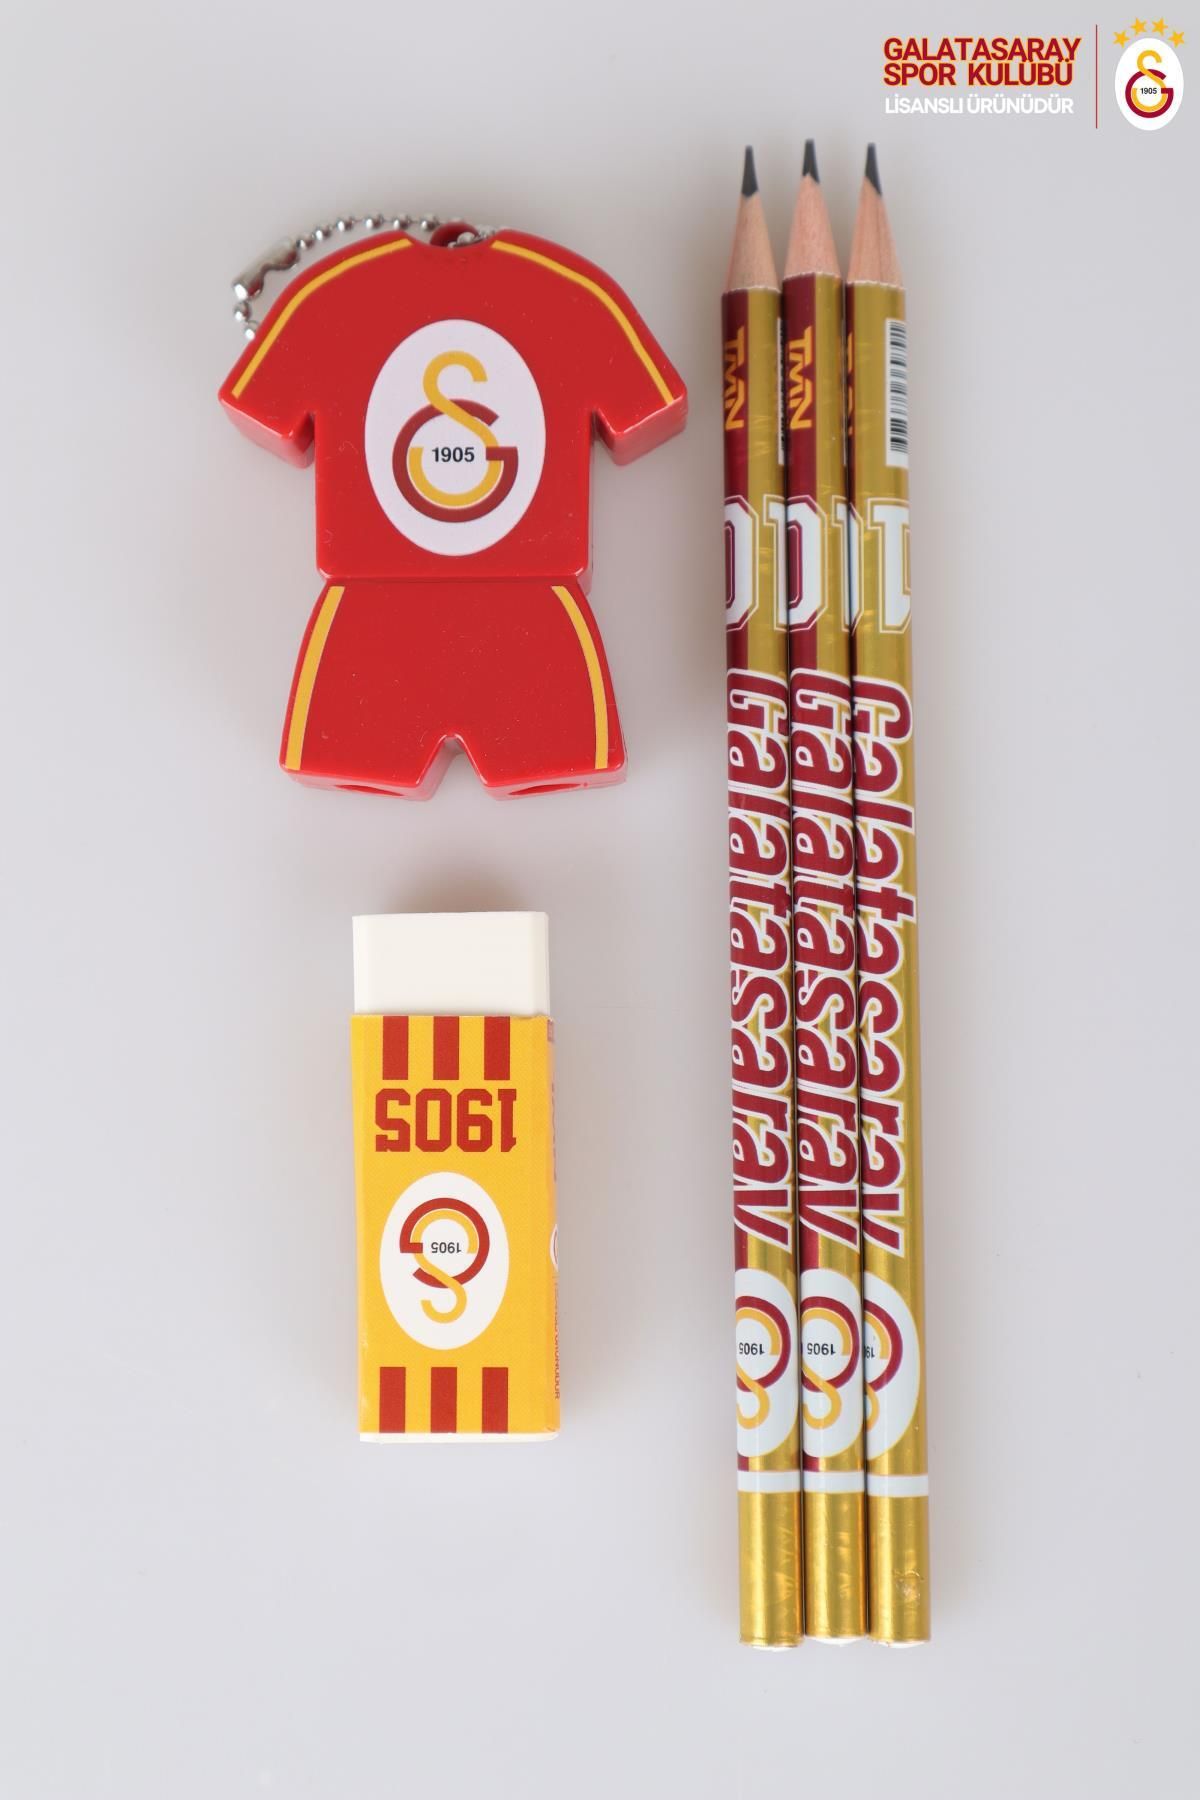 Galatasaray Lisanslı 3 Adet Kurşun Kalem,logo Silgi Ve Kalemtraş Seti